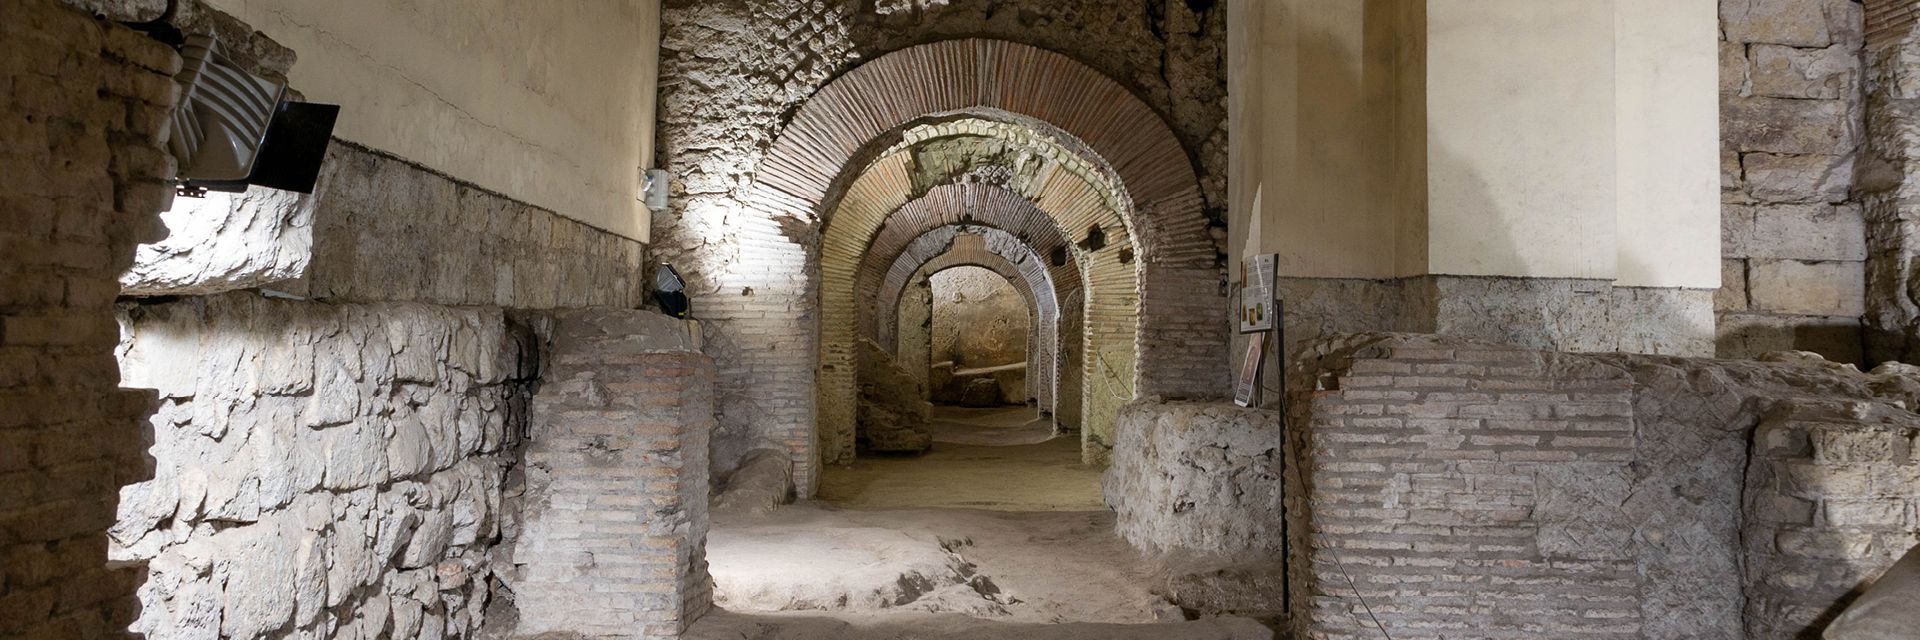 Museo de la obra de San Lorenzo Maggiore y Excavaciones Arqueológicas